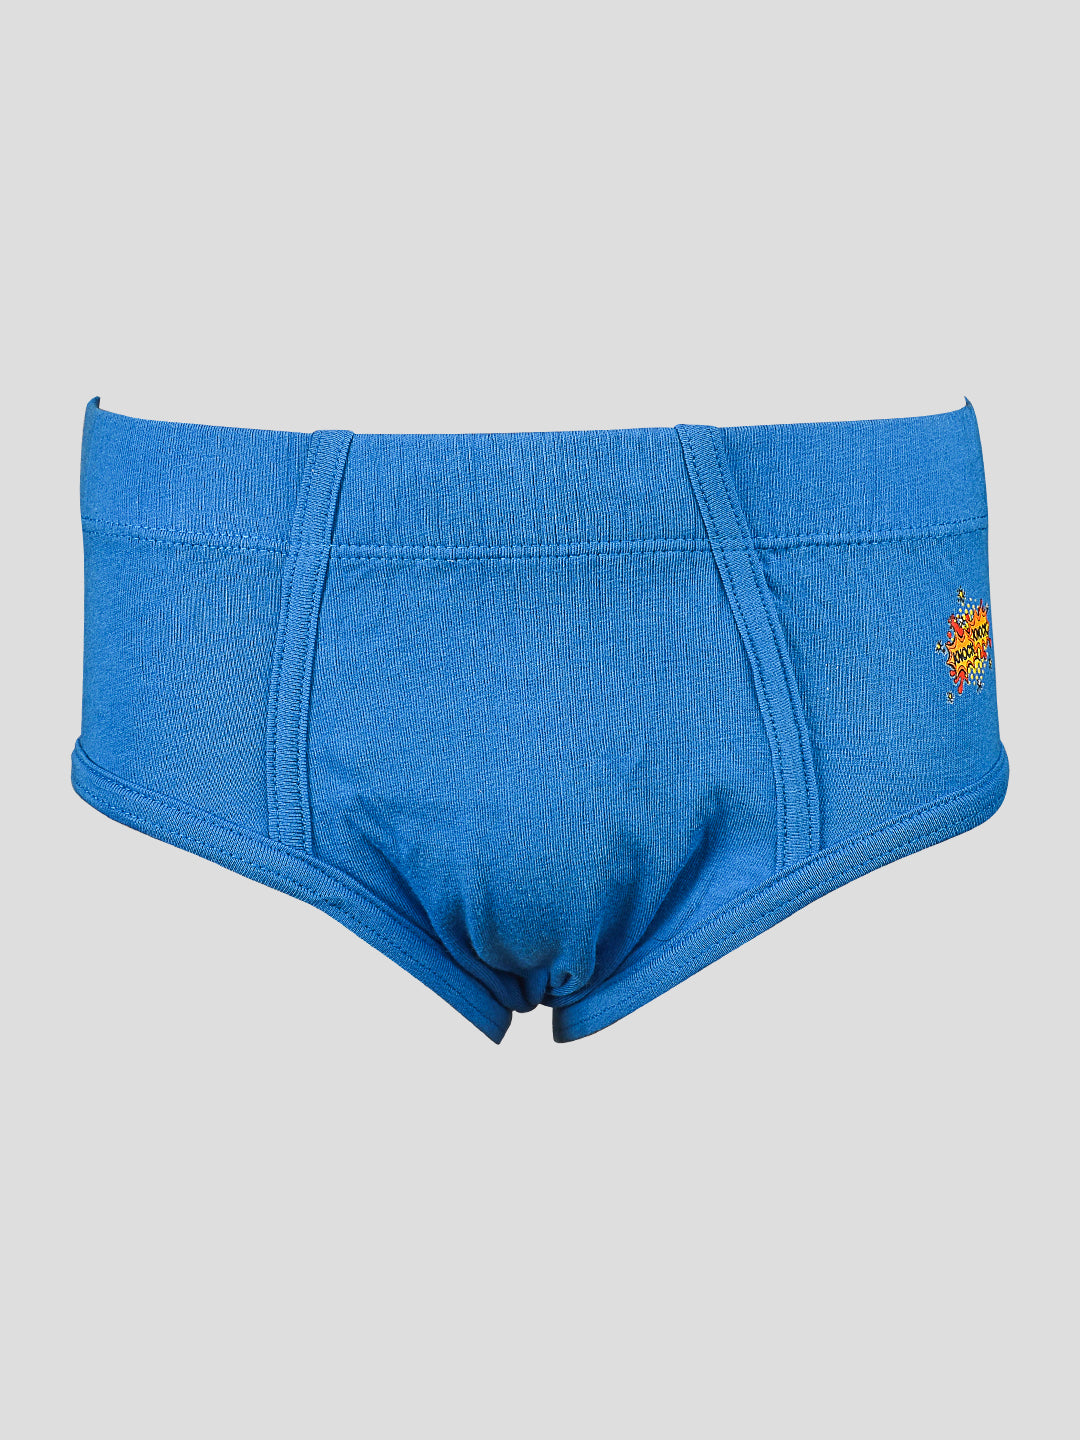 Smarty Comfy Kids Boys Innerwear - 18-24 Months at Rs 399/piece, Children  Underwear